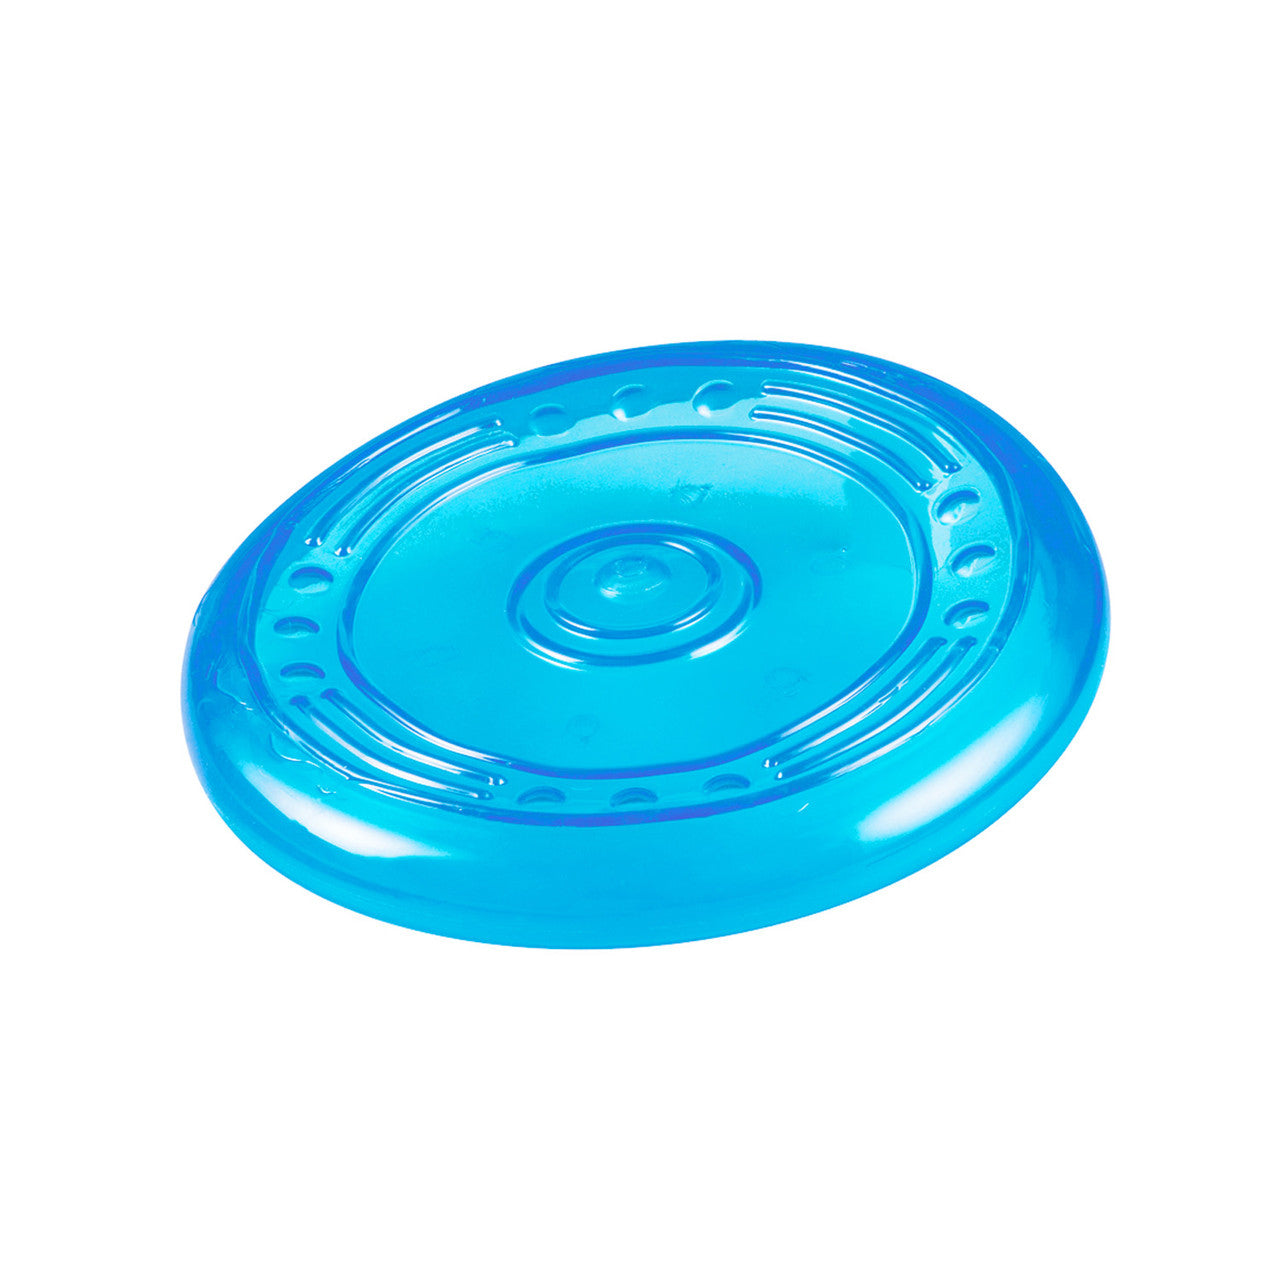 Orka Flyer Flying Disc Dog Toy, Royal Blue